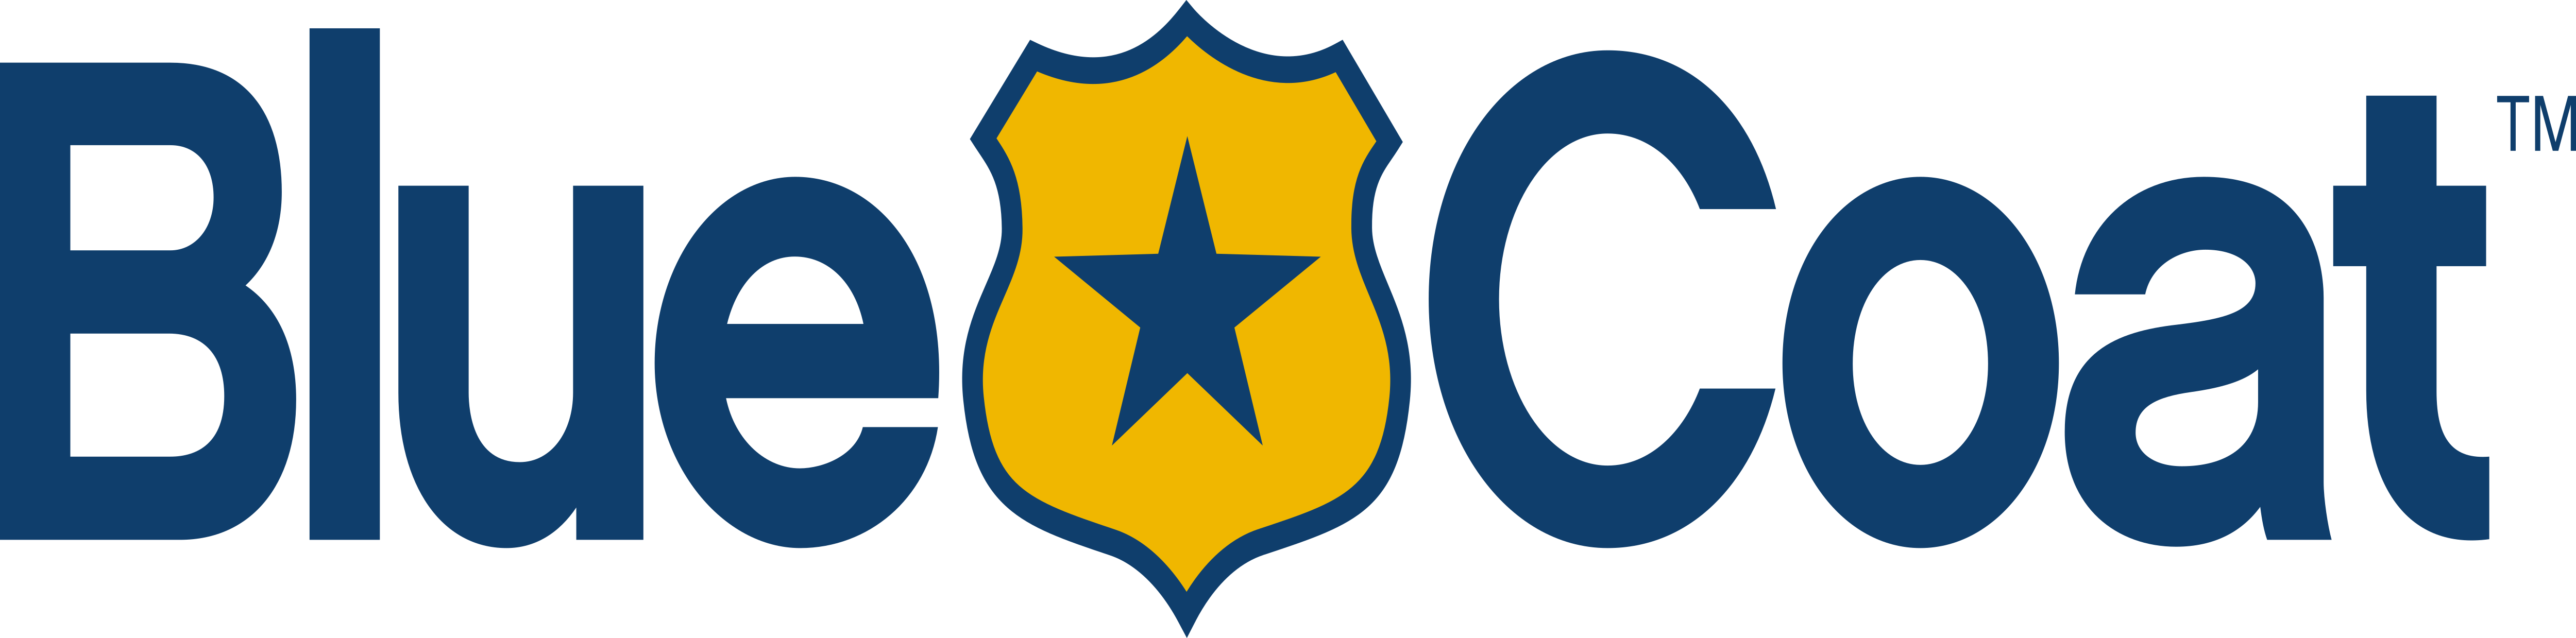 Bluecoat Logo